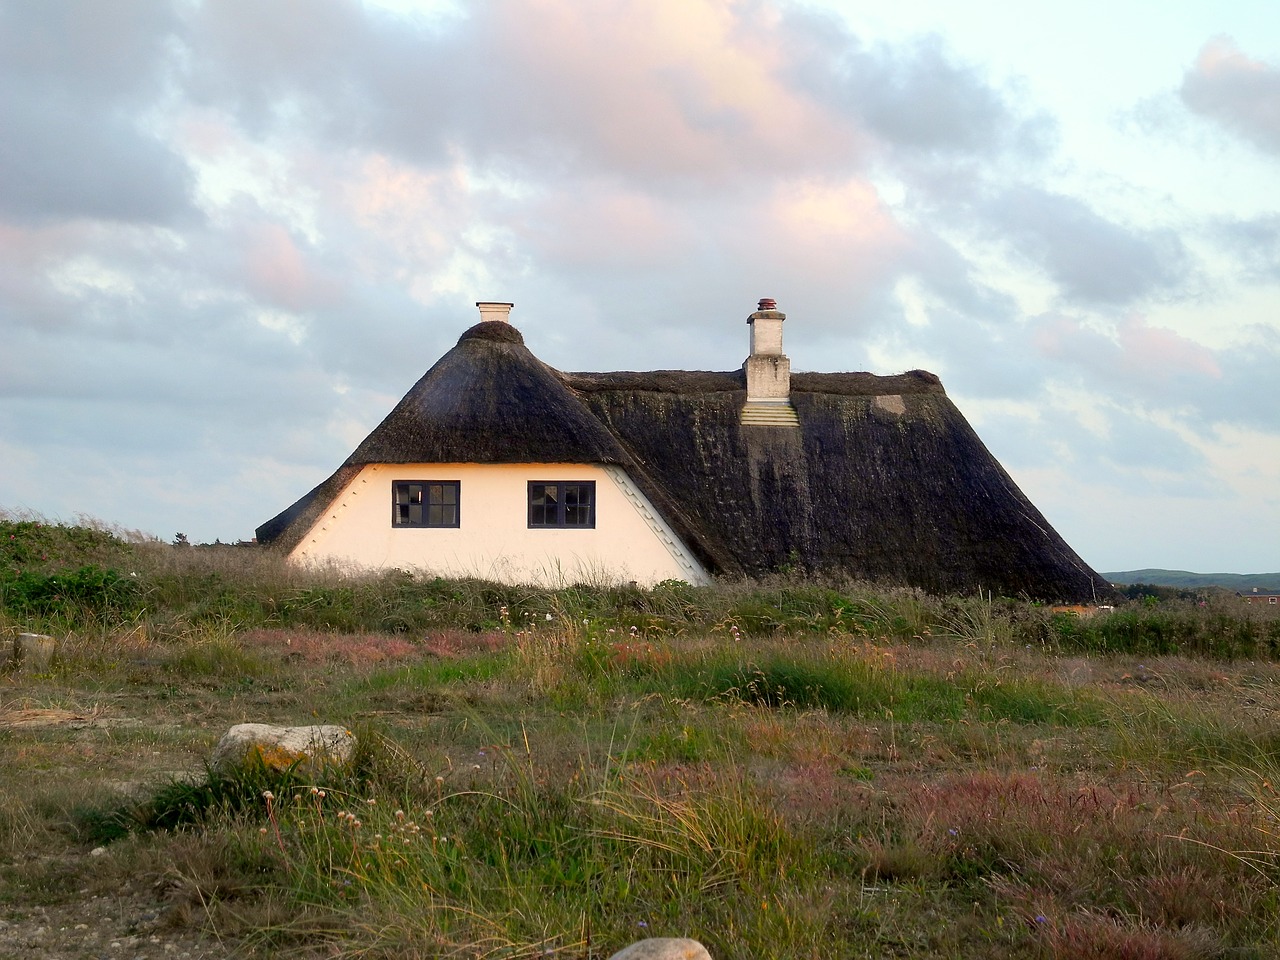 Дом рид. Домик в Дании с соломенной крышей. Дома с соломенной крышей Куршская коса. Фасад здания с двускатной соломенной крышей. Сельские соломенные крыши в Исландии.